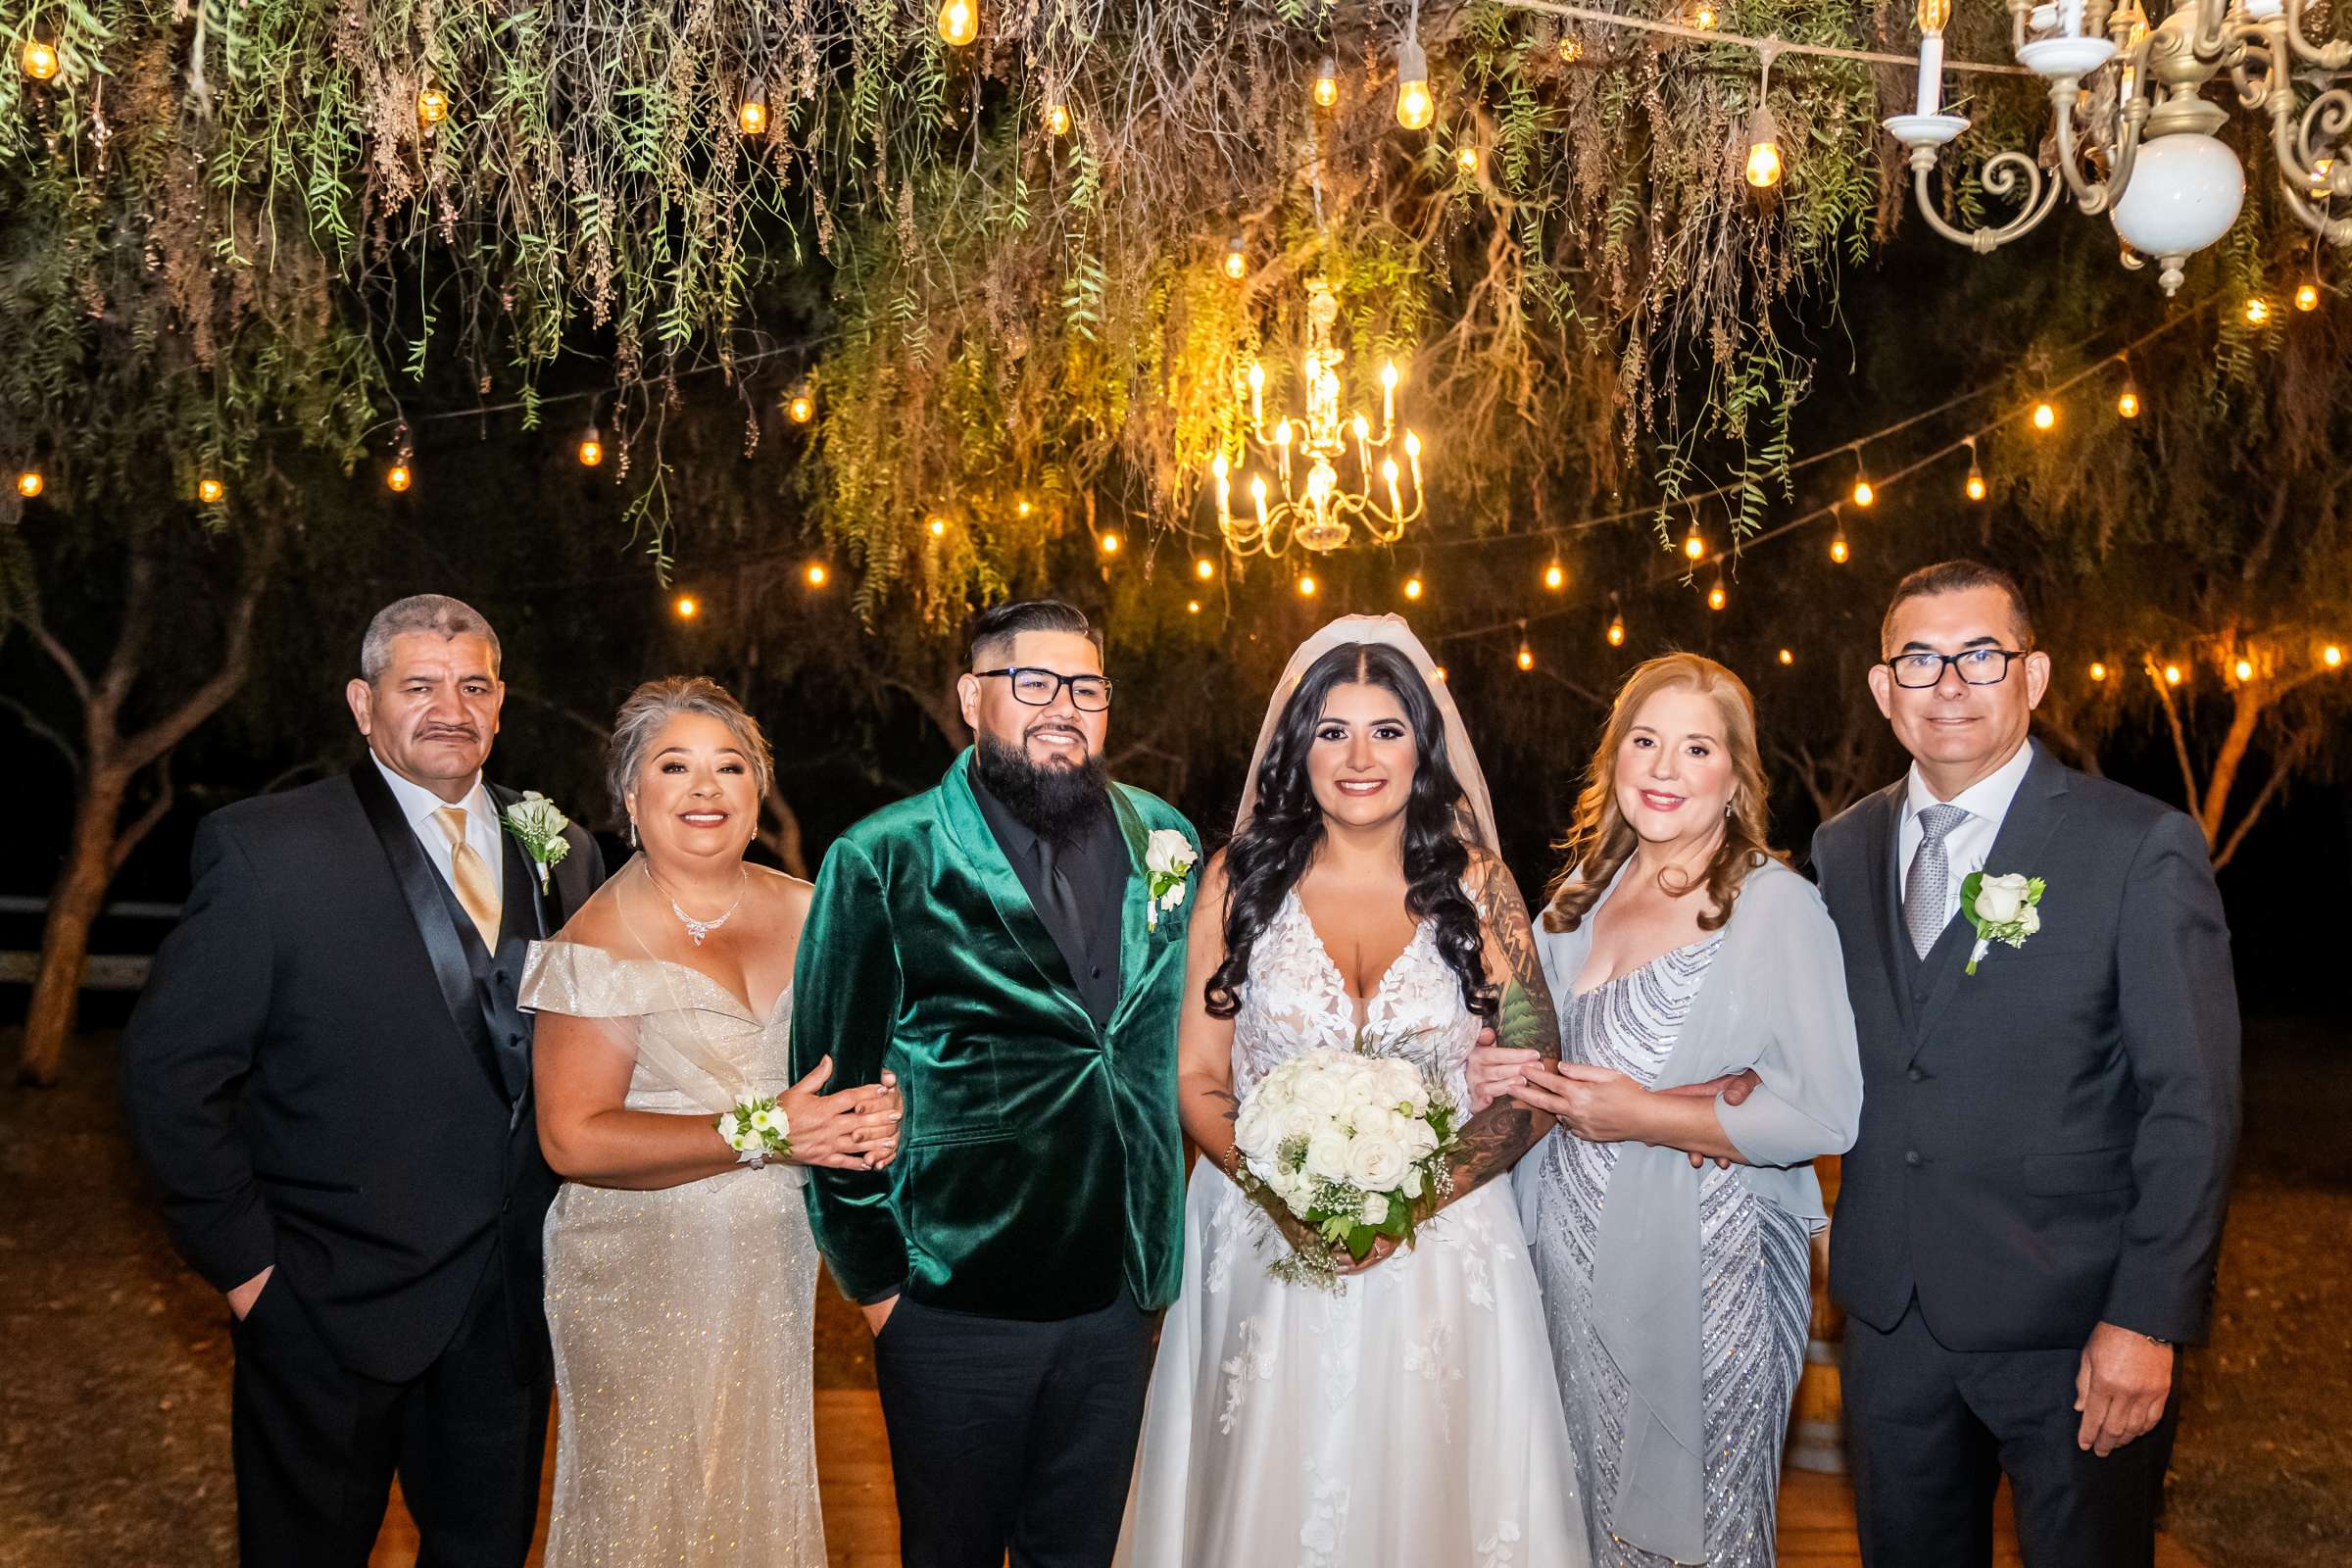 La Hacienda Wedding, Ashley and Alvaro Wedding Photo #24 by True Photography